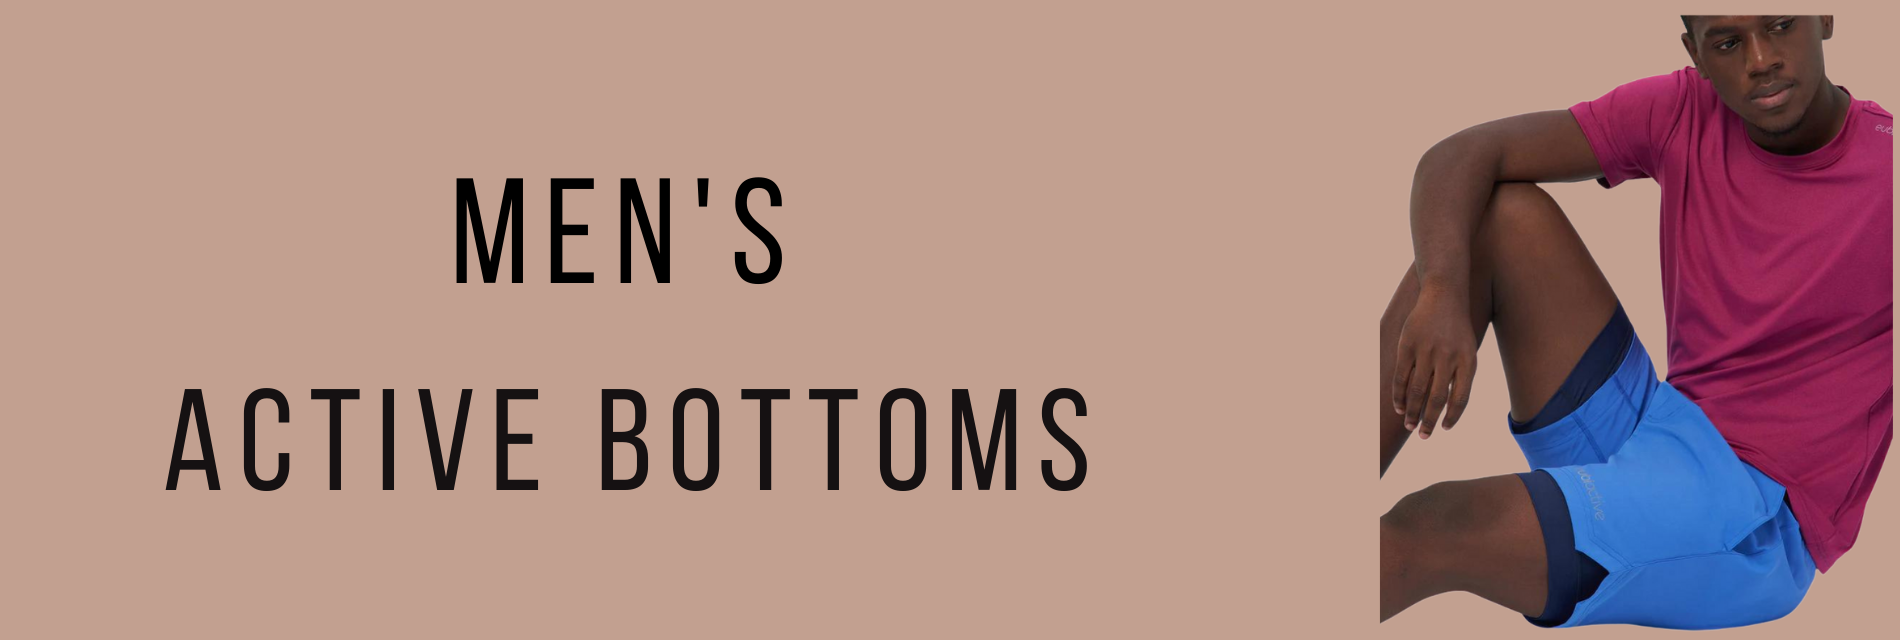 Men's Active Bottoms